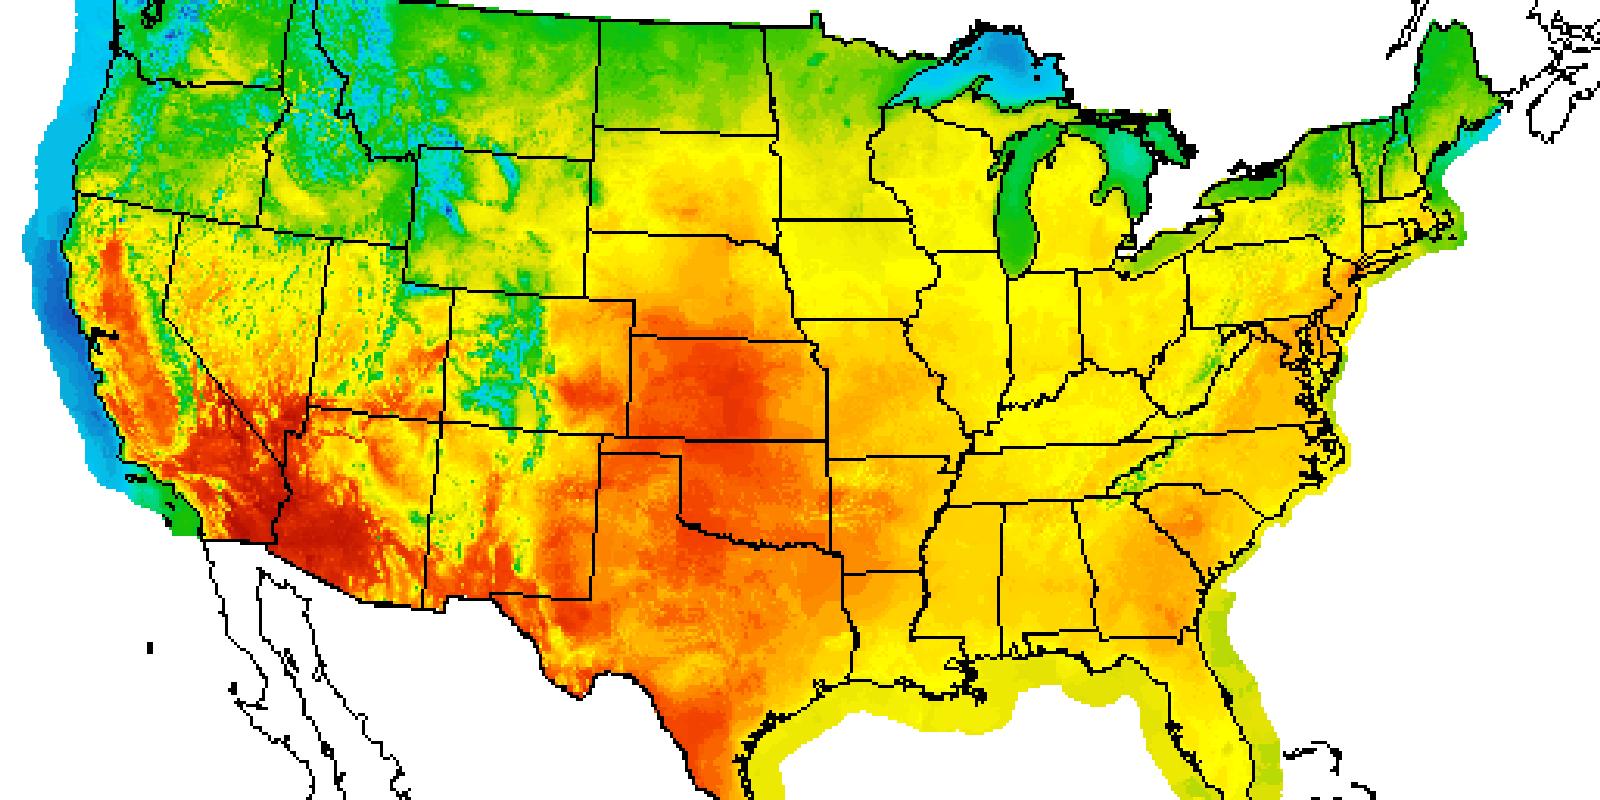 počasí usa mapa Počasí USA mapa počasí   mapa Počasí USA, předpověď počasí  počasí usa mapa